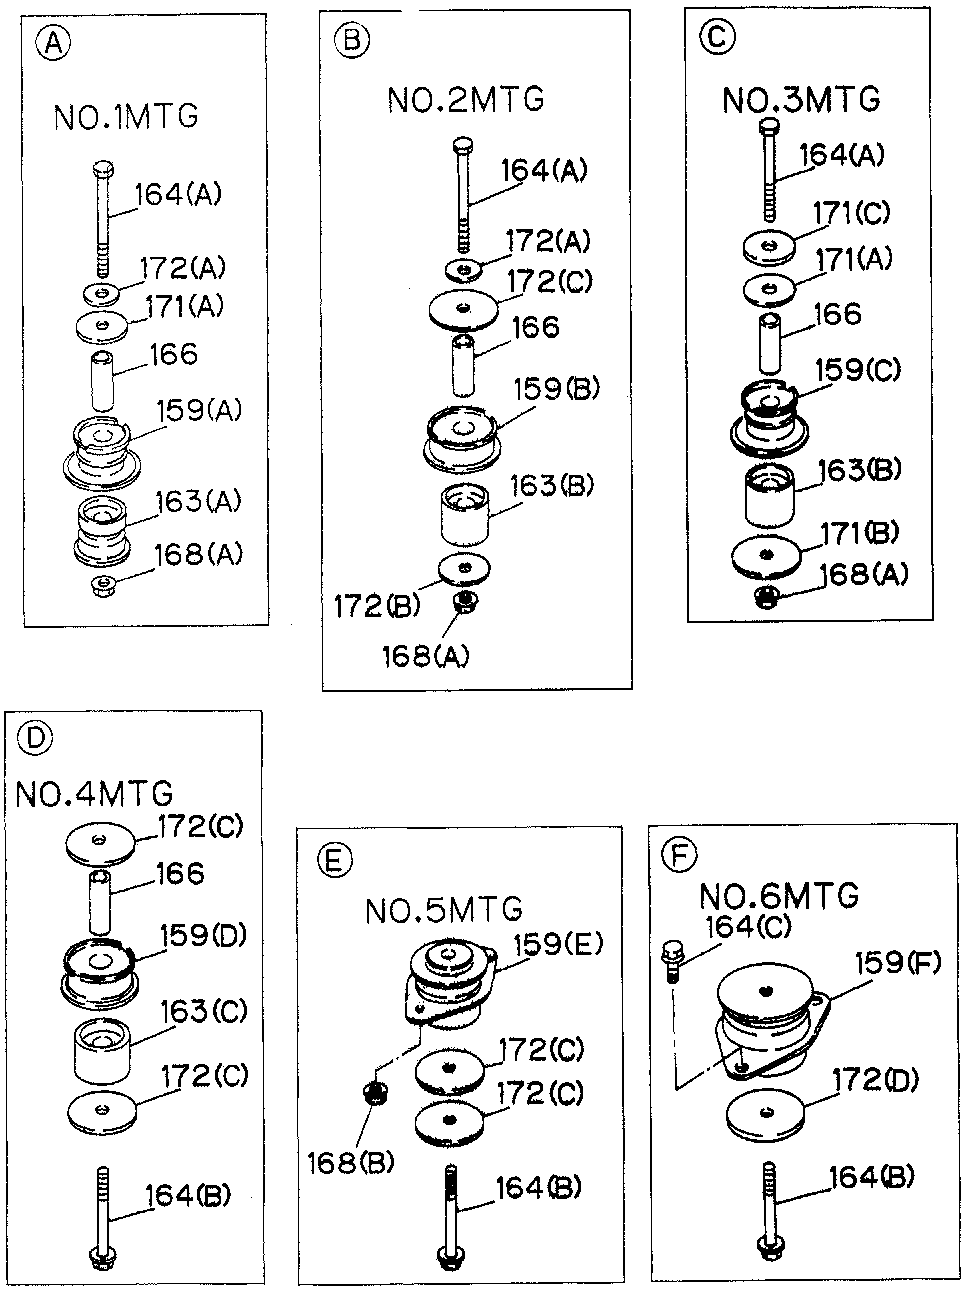 8-97091-599-0 - BOLT (CAB/NO.4 MTG) (10X102)